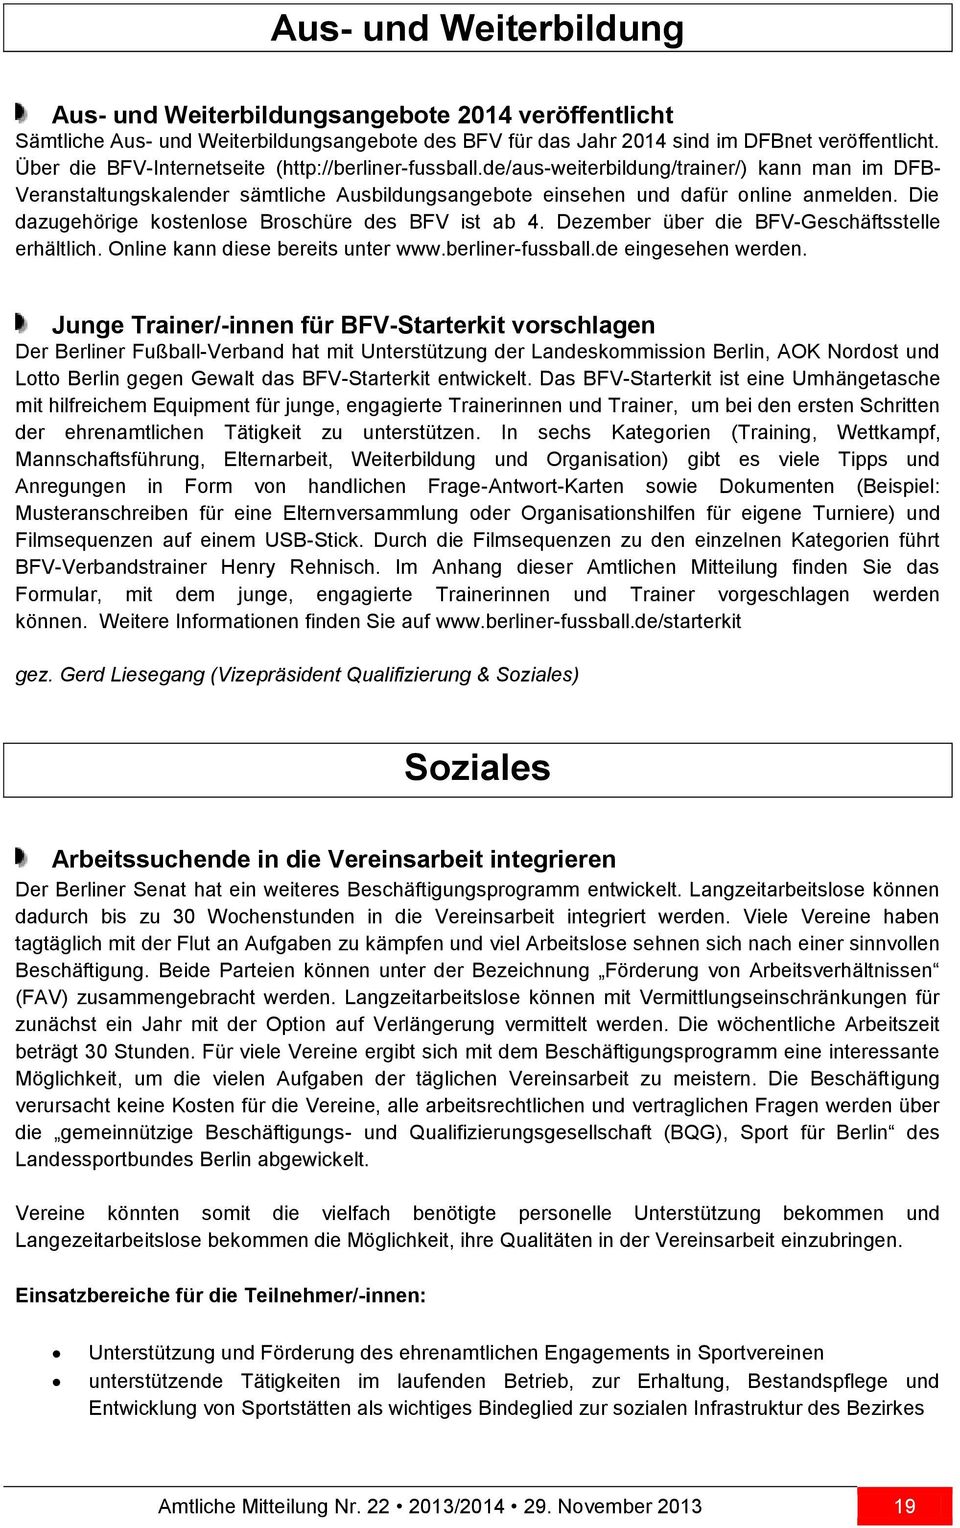 Die dazugehörige kostenlose Broschüre des BFV ist ab 4. Dezember über die BFV-Geschäftsstelle erhältlich. Online kann diese bereits unter www.berliner-fussball.de eingesehen werden.